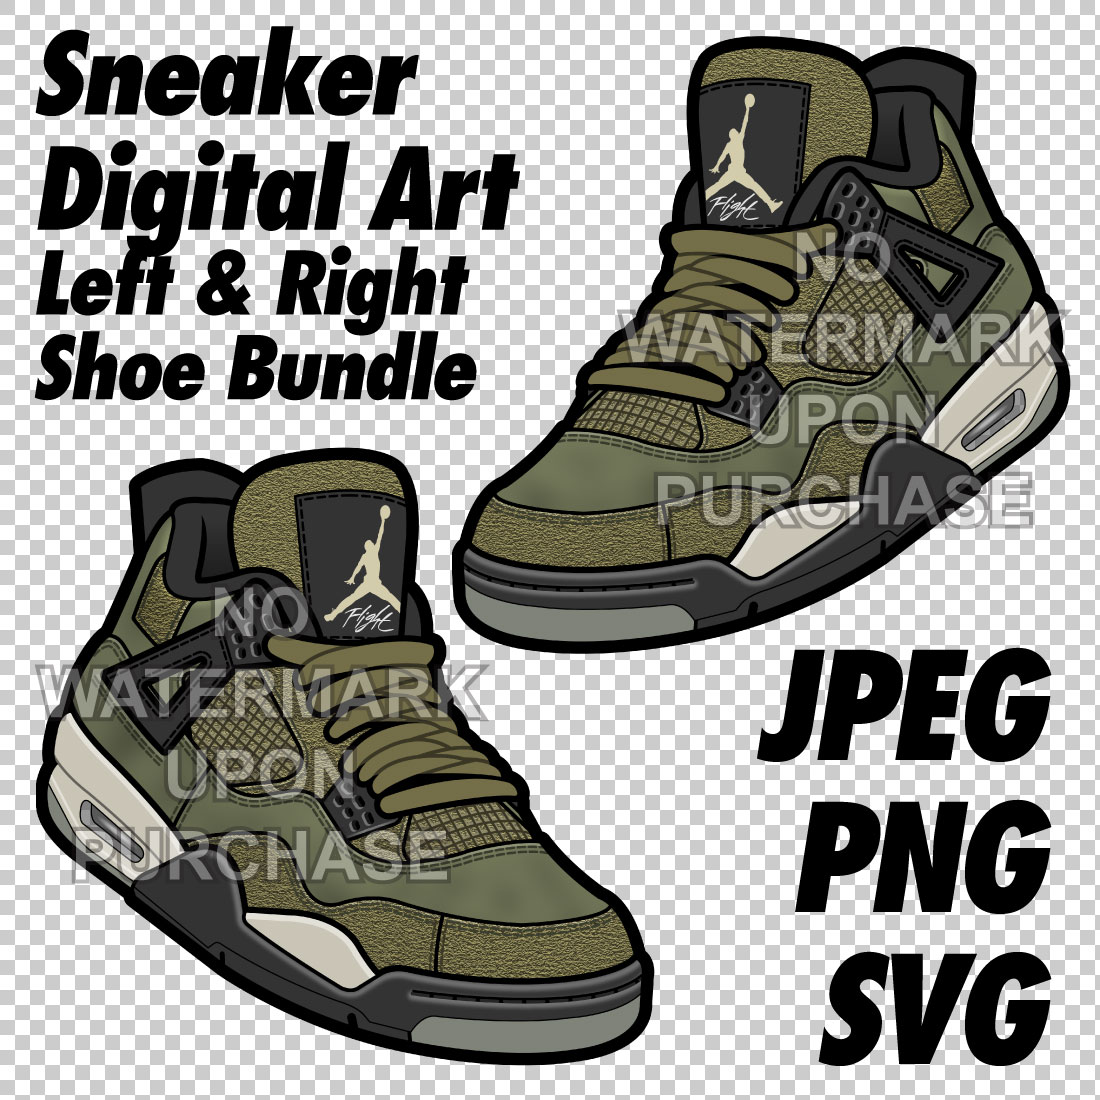 Air Jordan 4 Craft Olive JPEG PNG SVG Left & Right Shoe Bundle cover image.